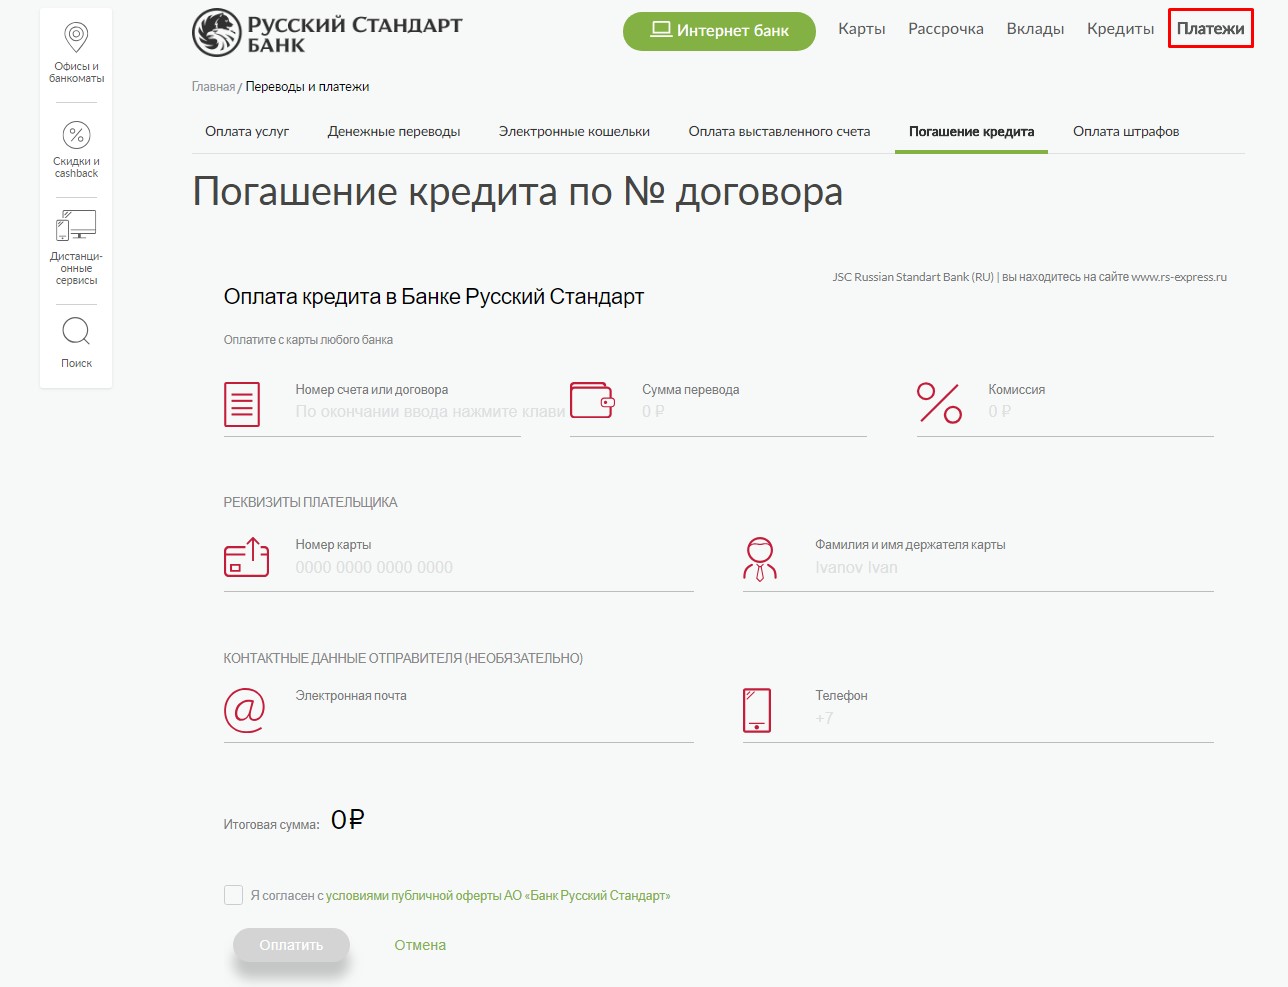 Оплата на официальном сайте Русский Стандарт